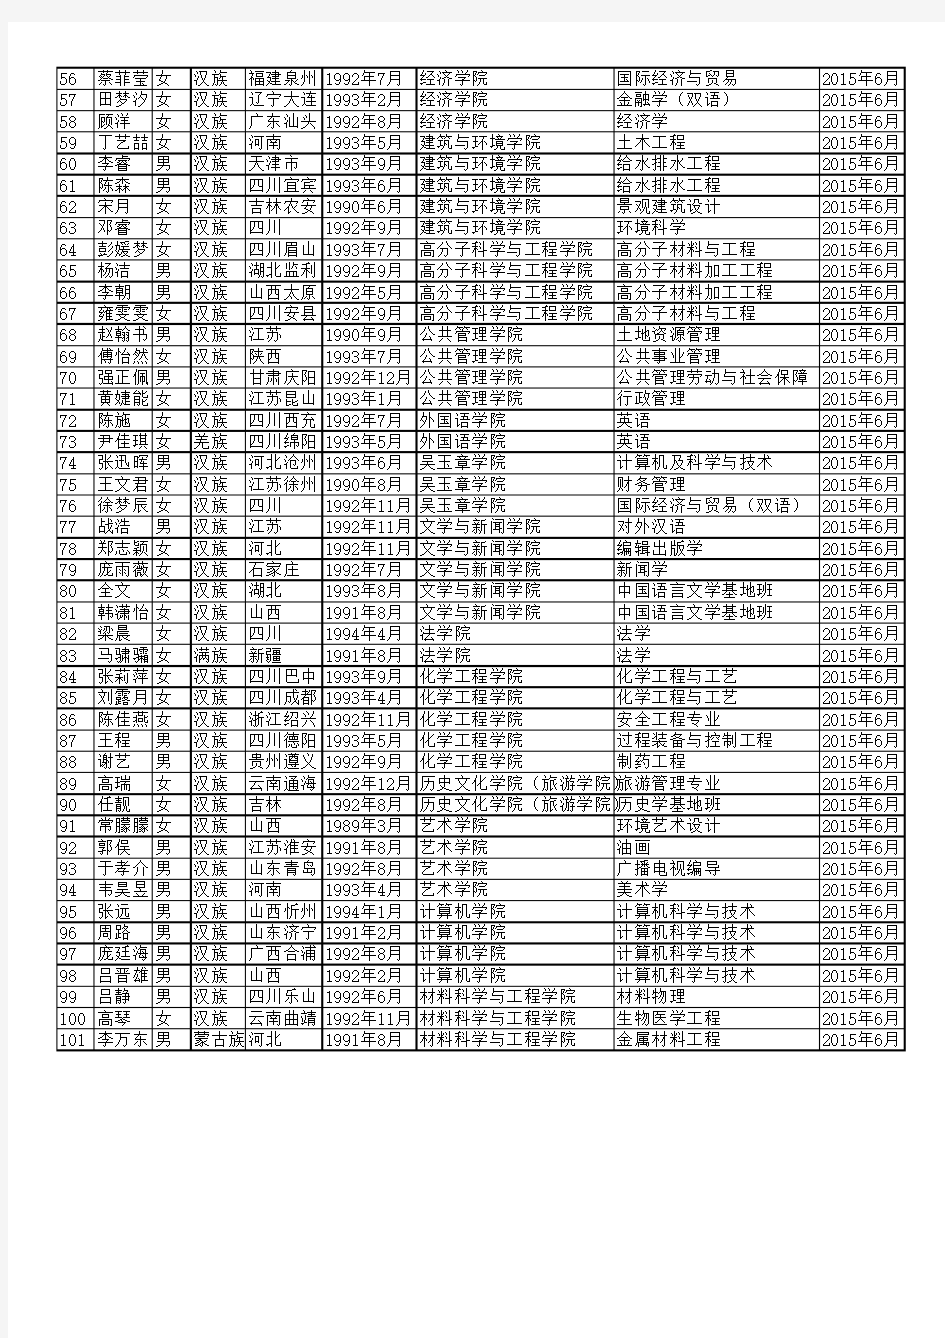 四川大学2015届省级优秀毕业生初评名单(本科生)